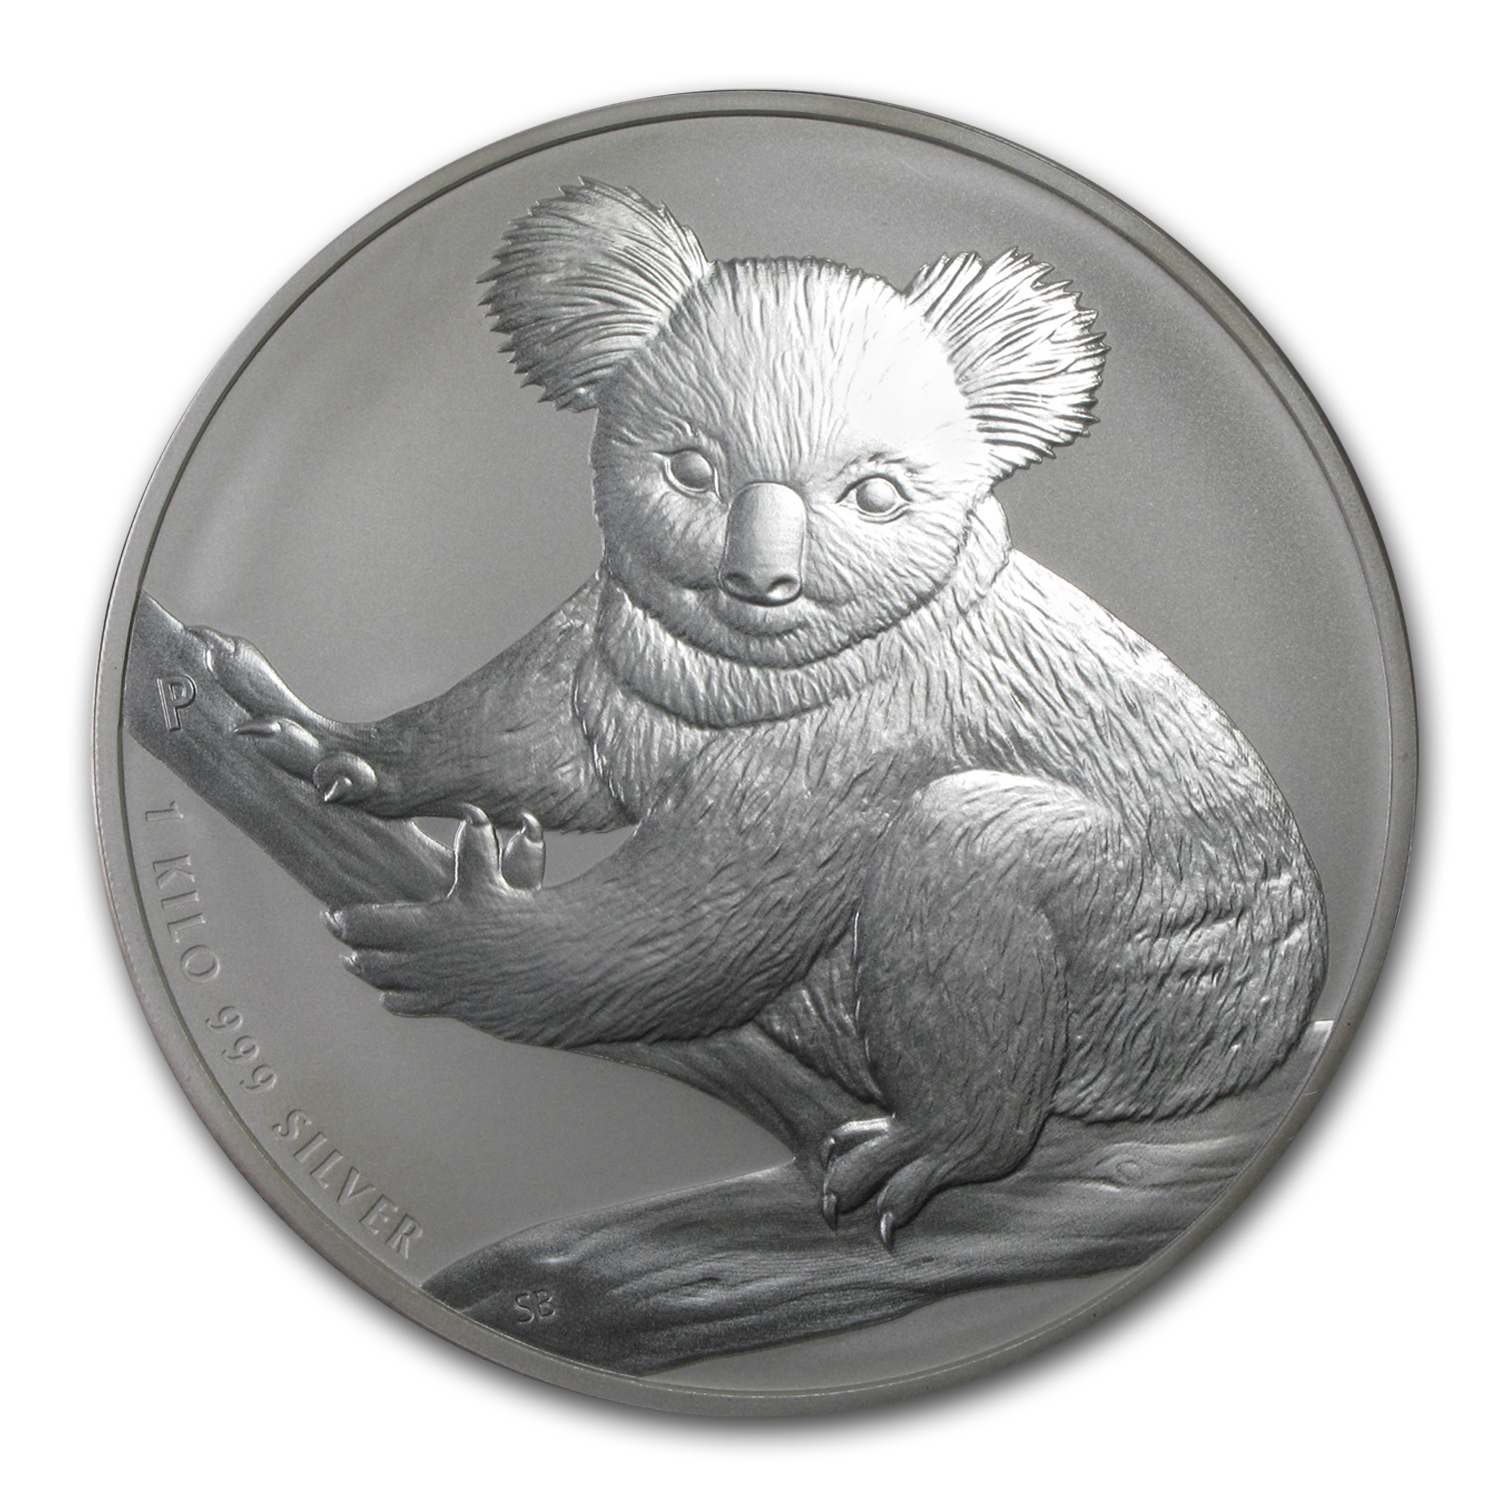 Buy 2009 Australia 1 kilo Silver Koala BU